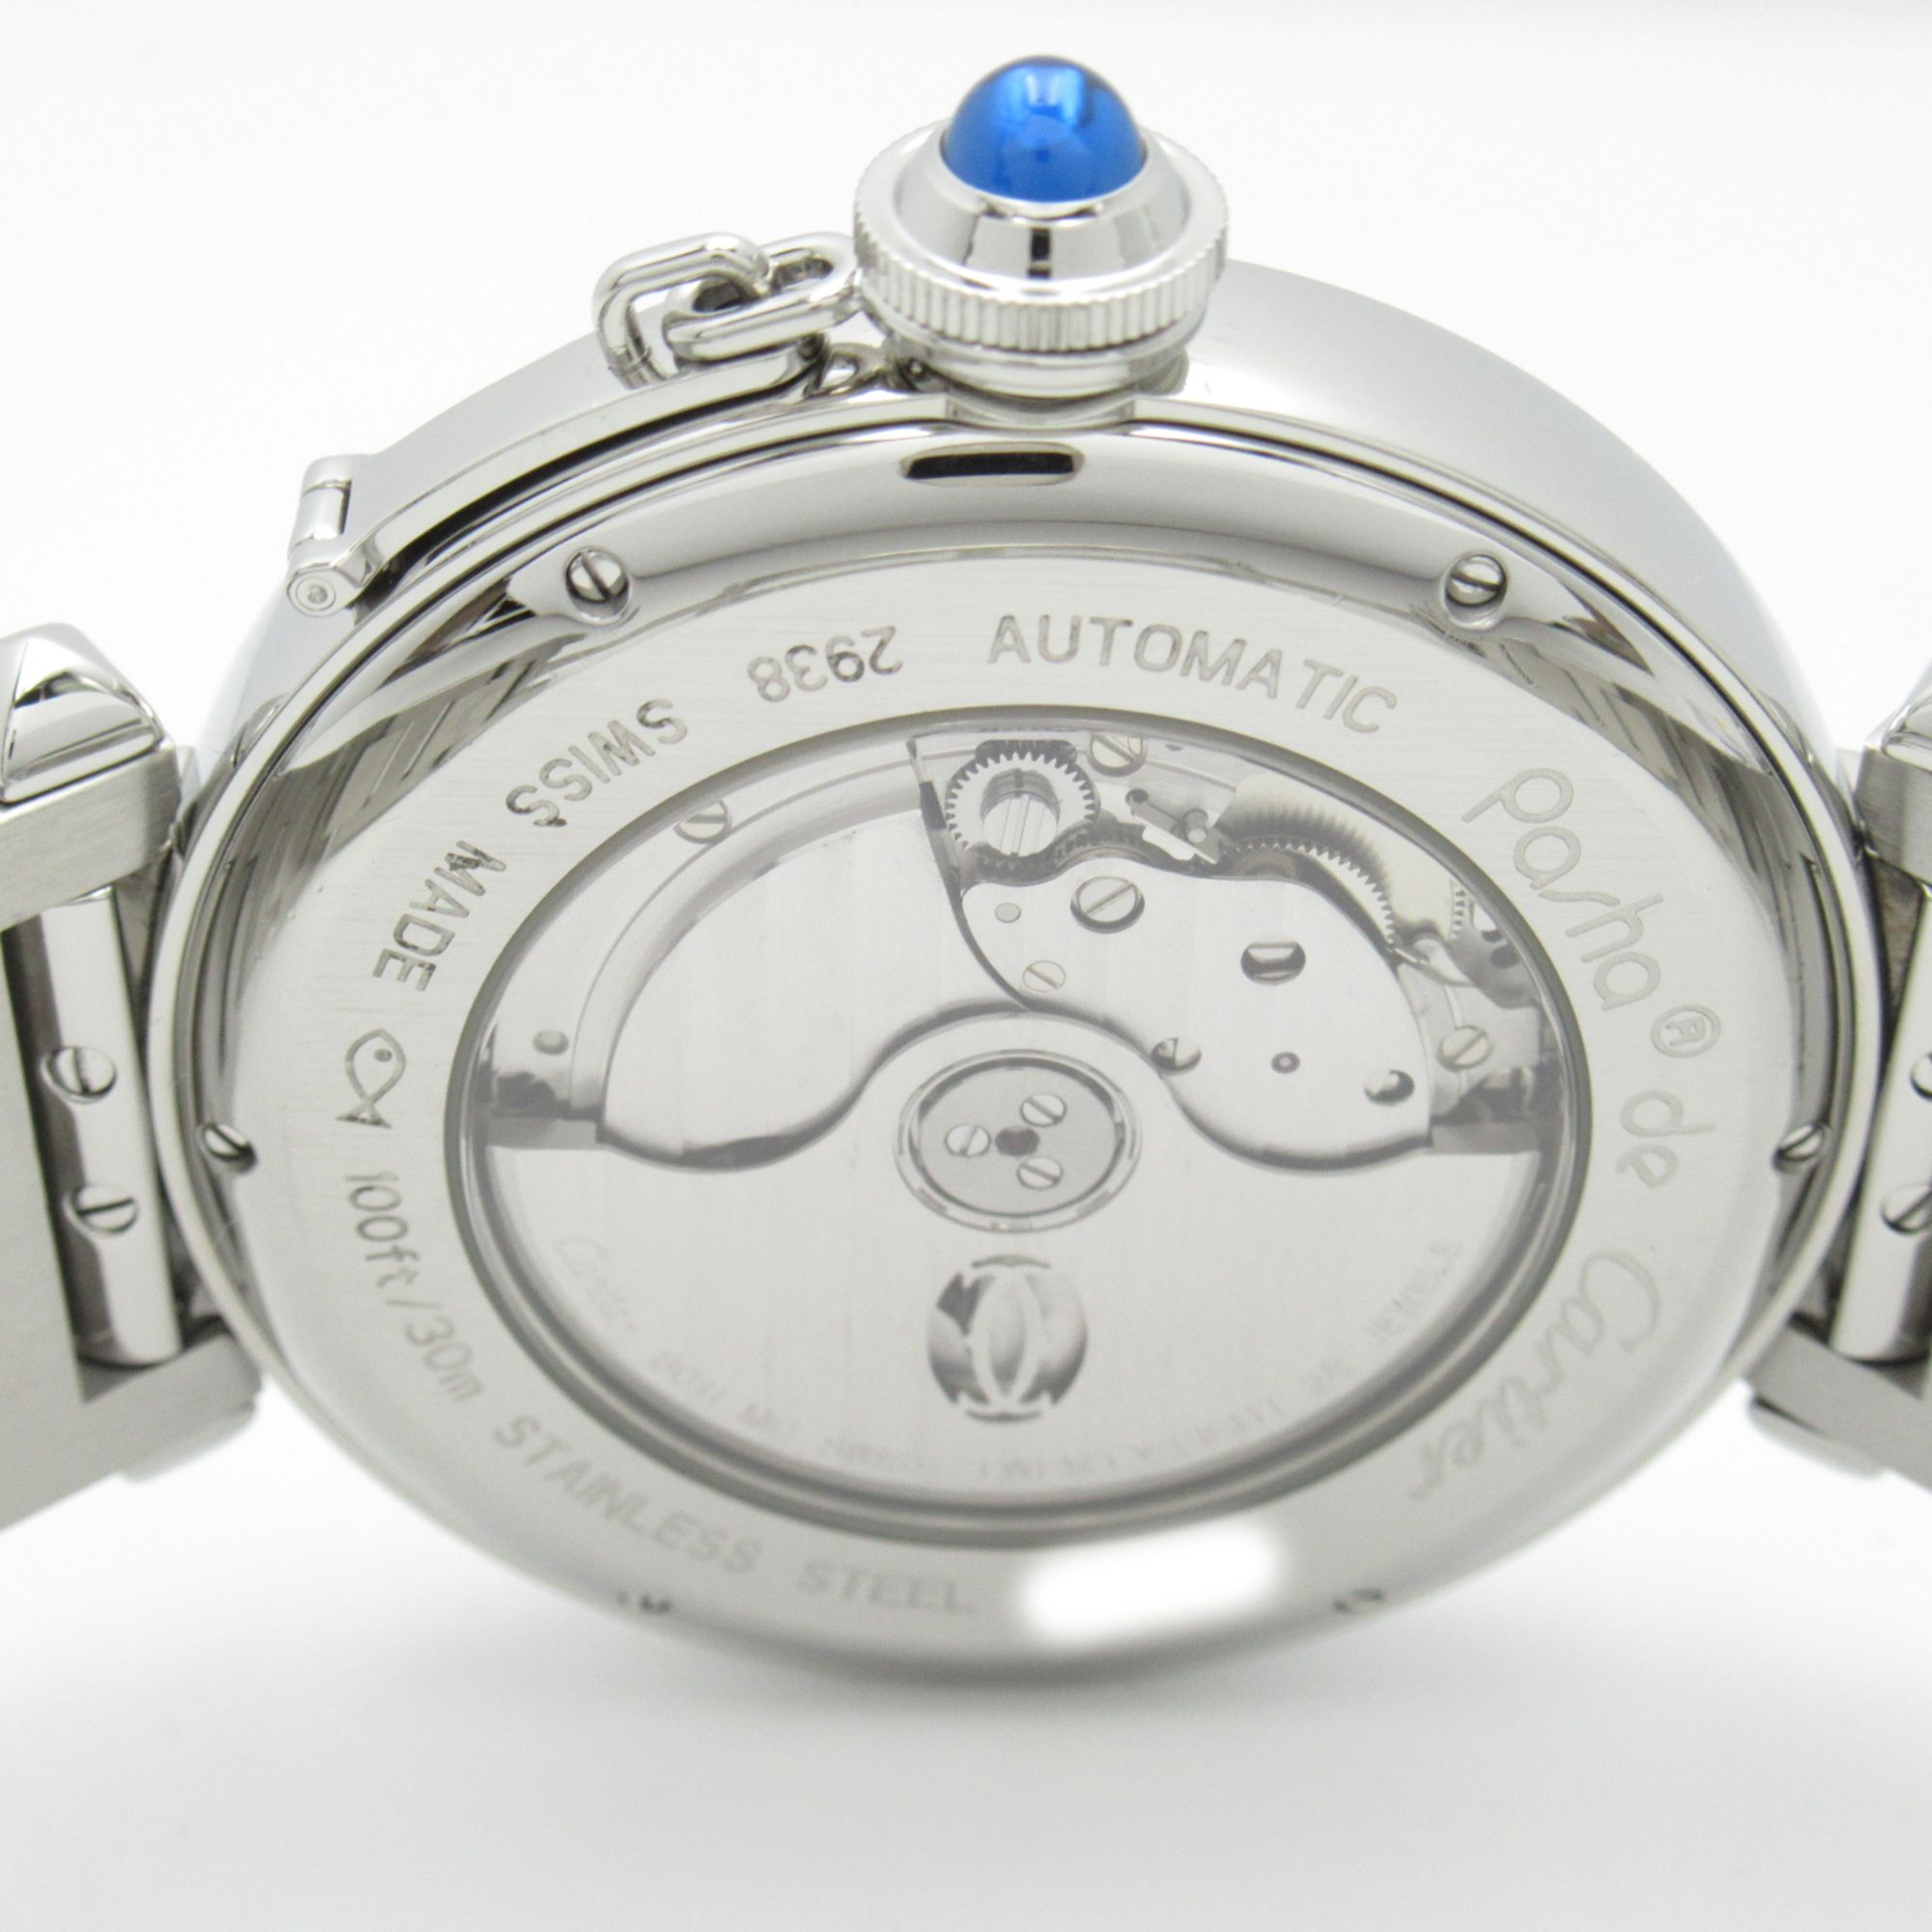 CARTIER Pasha XL Night & Day Wrist Watch watch Wrist Watch W31093M7 Mechanical Automatic Silver  Stainless Steel W31093M7